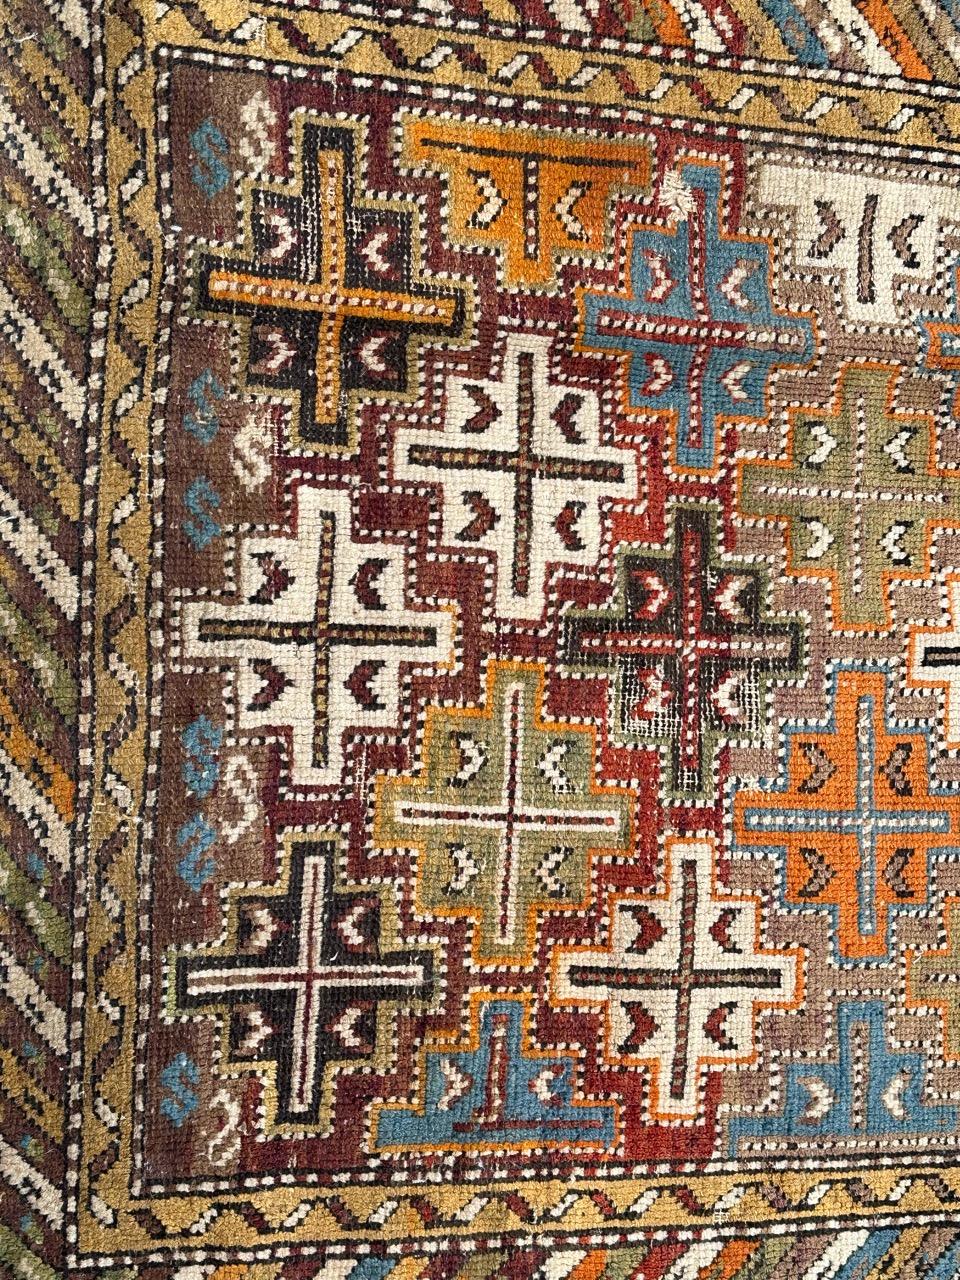 Hübsches Schirwan-Fragment aus dem späten 19. Jahrhundert mit schönem geometrischem Muster und schönen Farben.   Vollständig handgeknüpft mit Wolle auf Wollbasis. Kleiner Schaden!

✨✨✨
